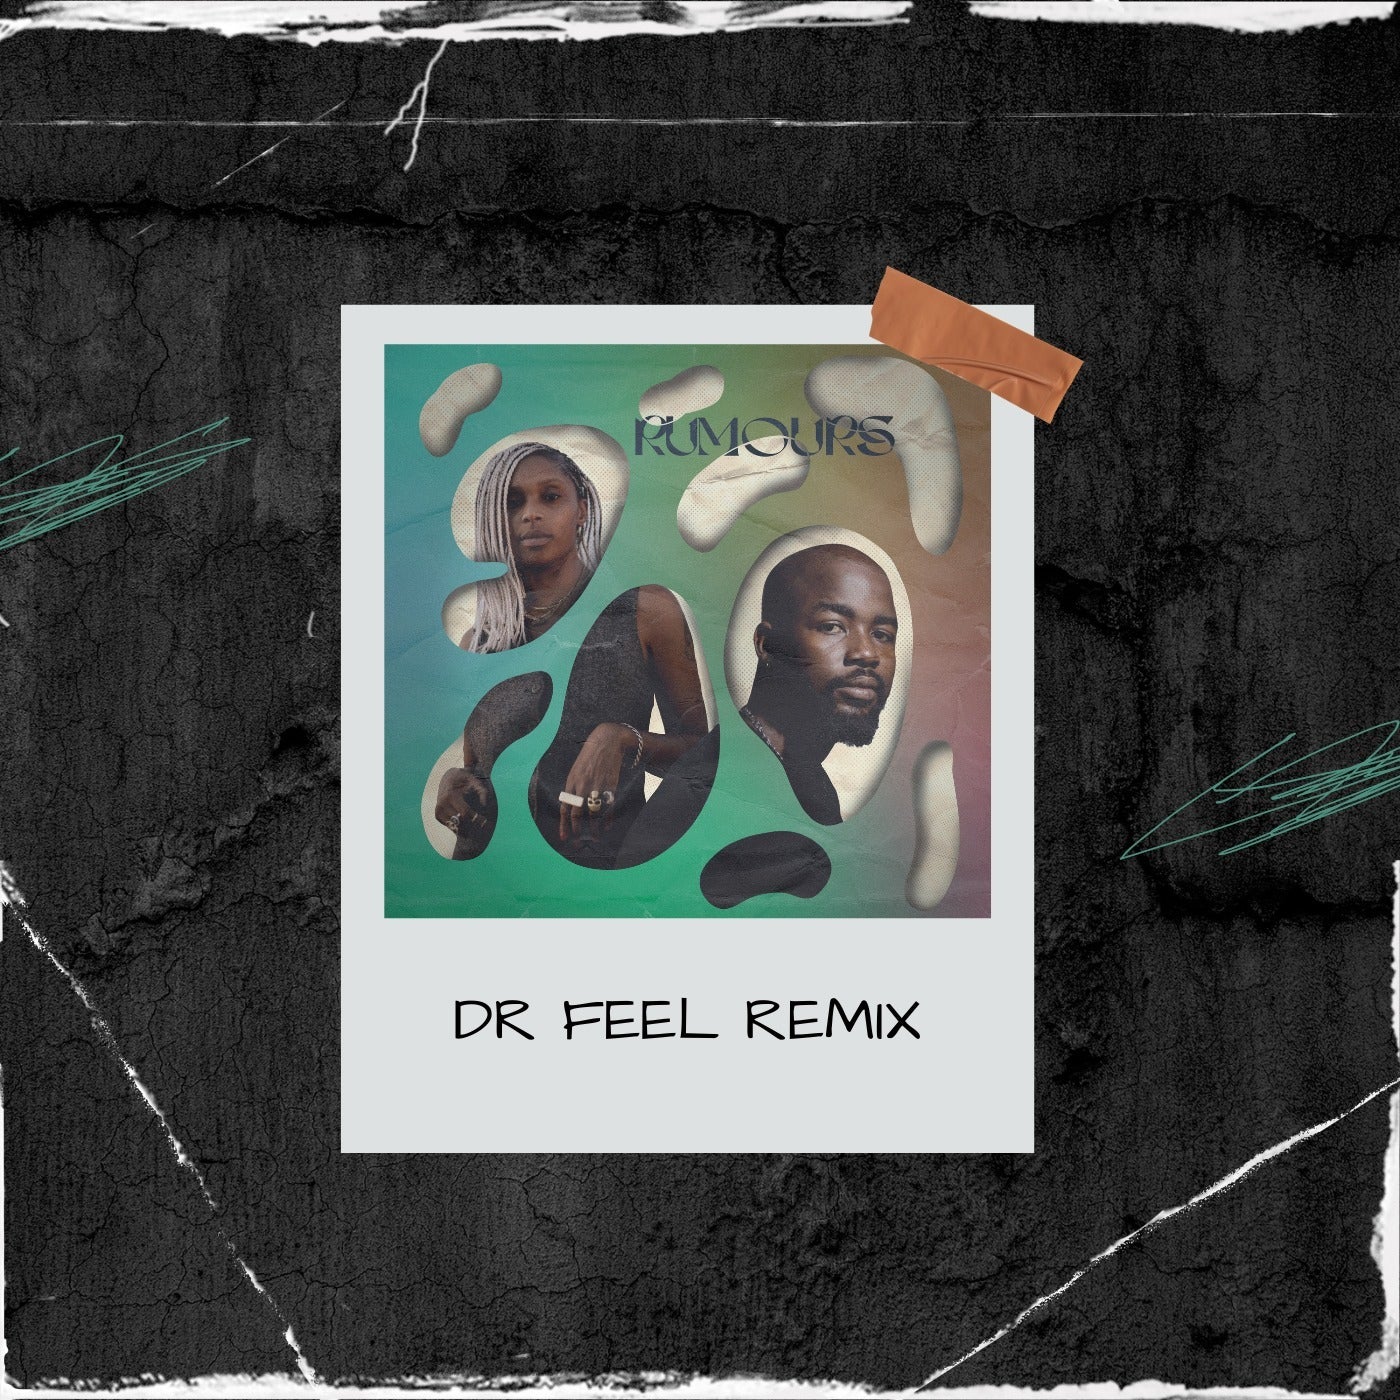 Cover - Megatronic, Wandile Mbambeni - Rumours (Dr Feel Remix)